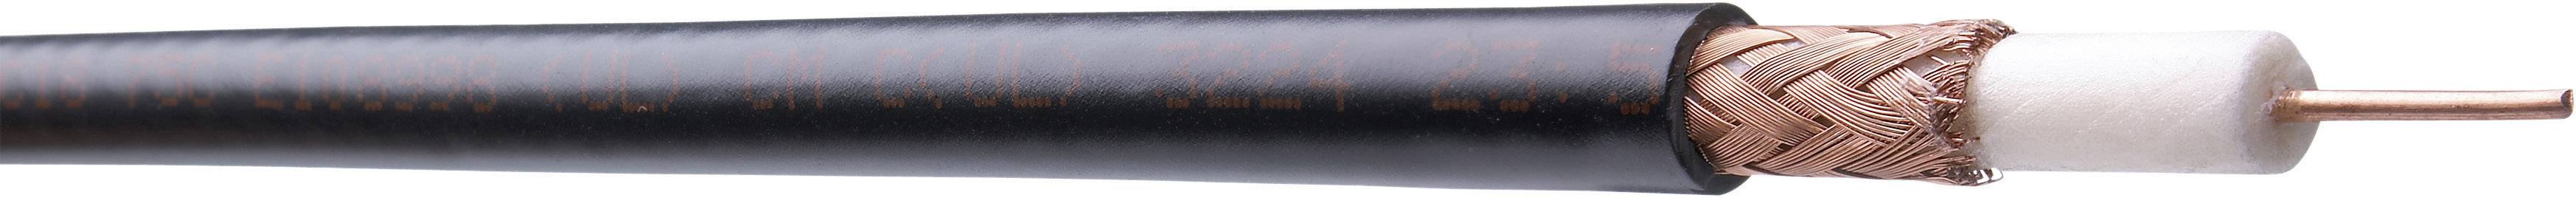 HIRSCHMANN Koaxialkabel Außen-Durchmesser: 2.8 mm RG179 75 ¿ Schwarz Belden MRG1791.00100 Meterware